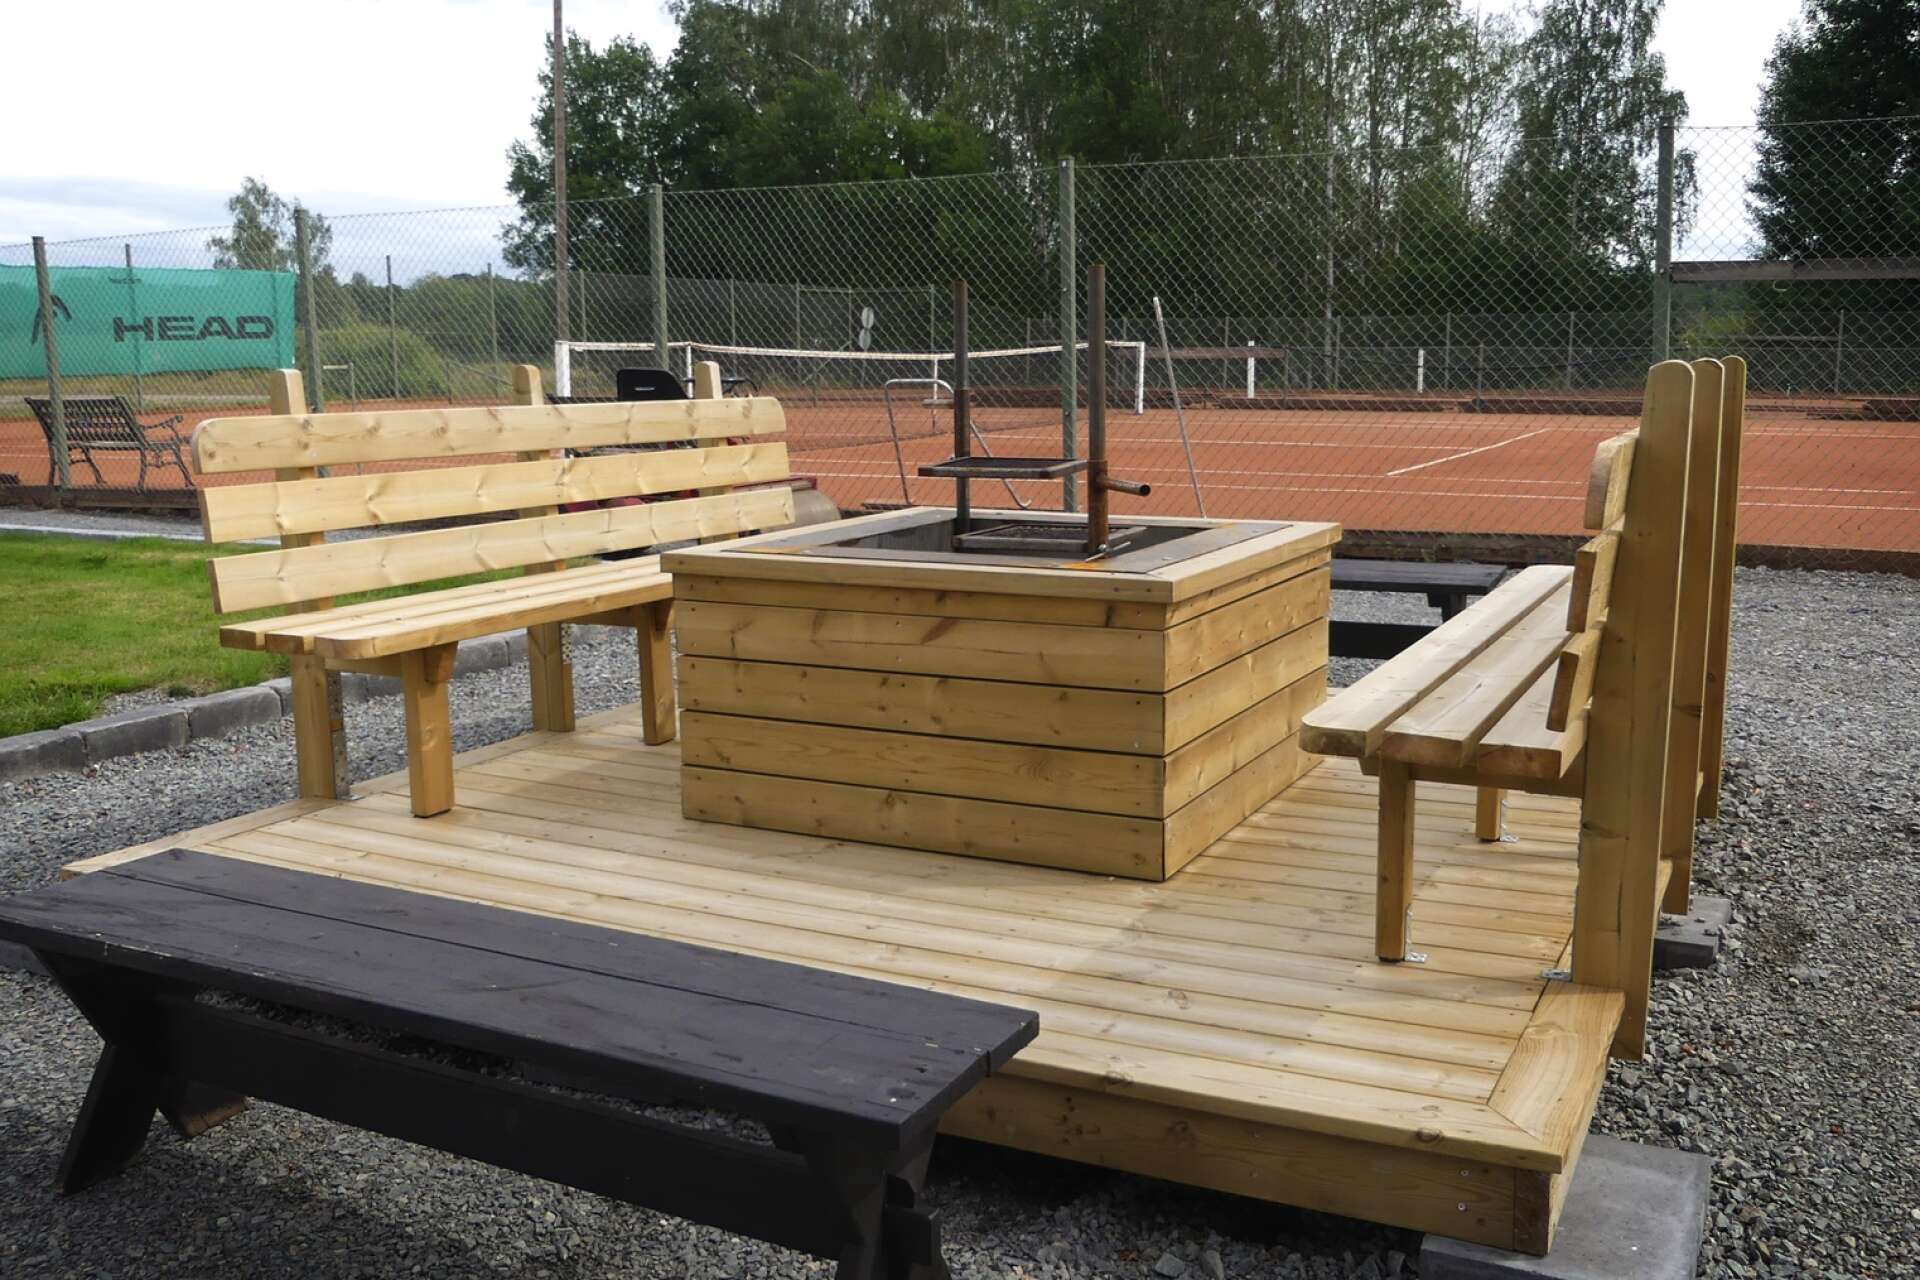 Grillplatsen är konstruerad av eleverna på byggprogrammet vid Herrgårdsgymnasiet.